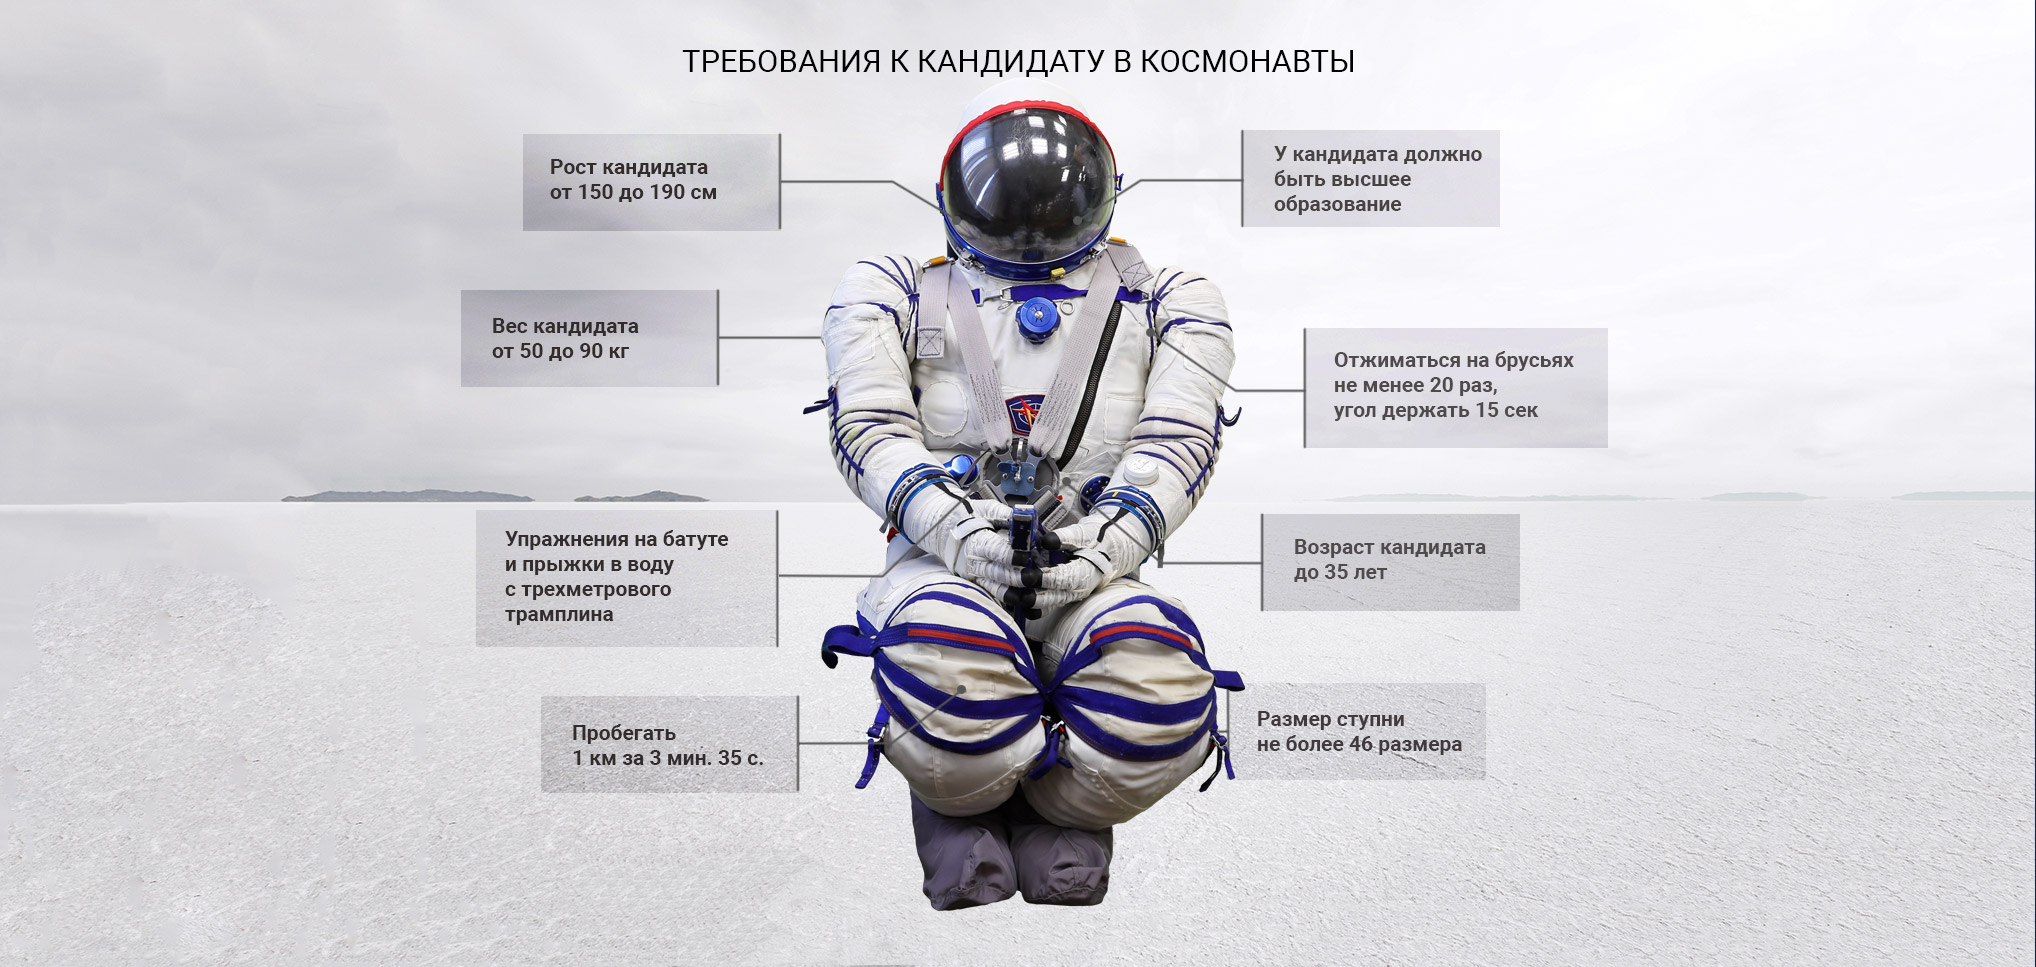 портрет современного космонавта